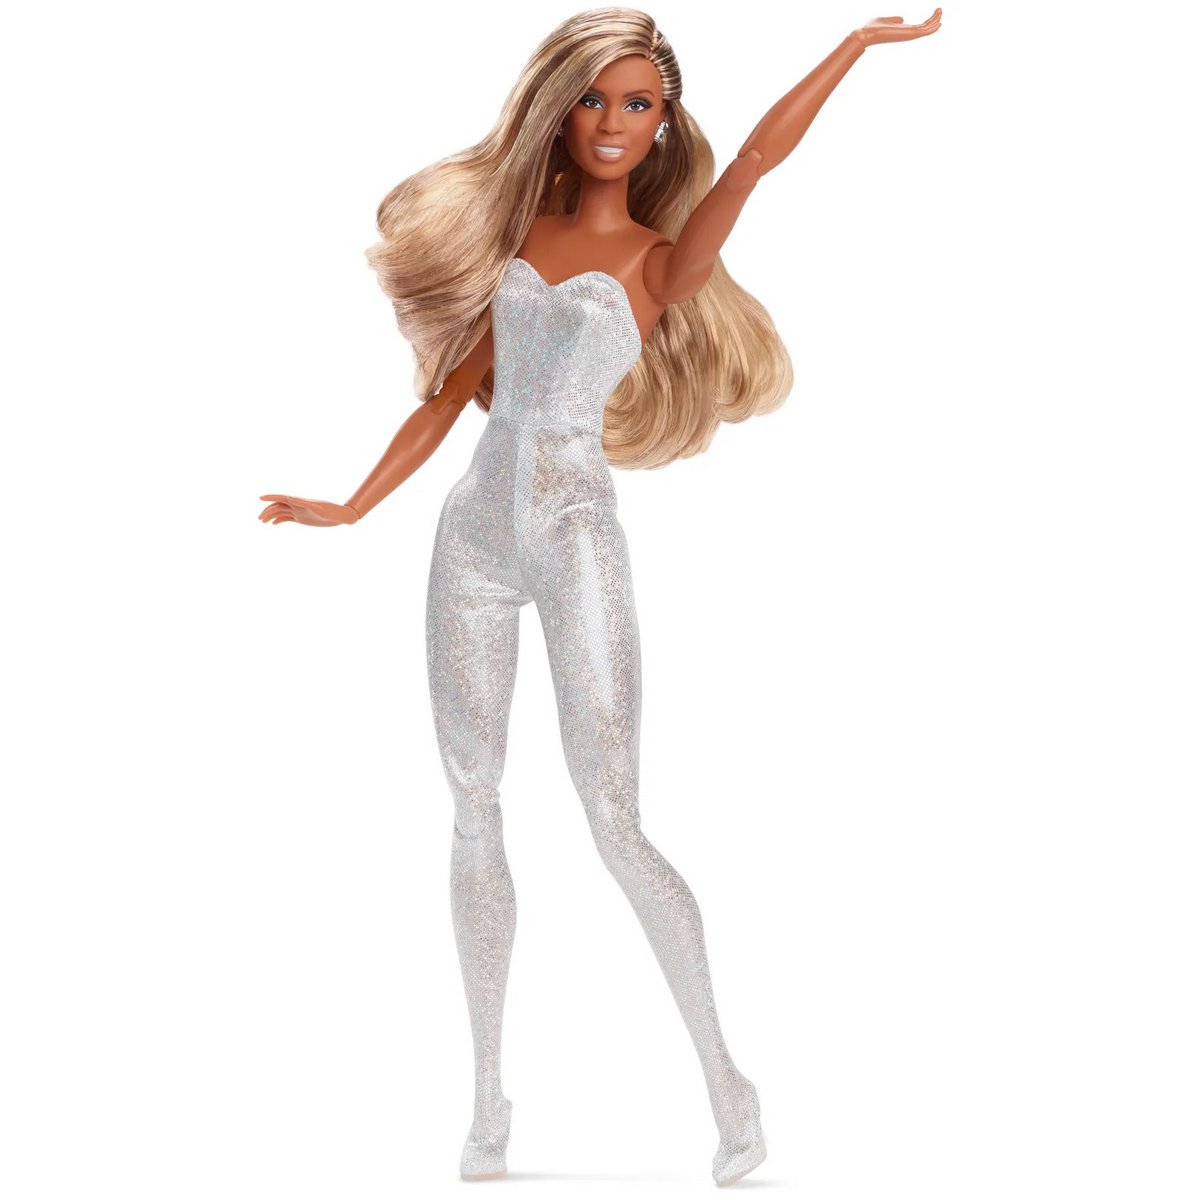 La toute première poupée Barbie transgenre vient d’être dévoilée